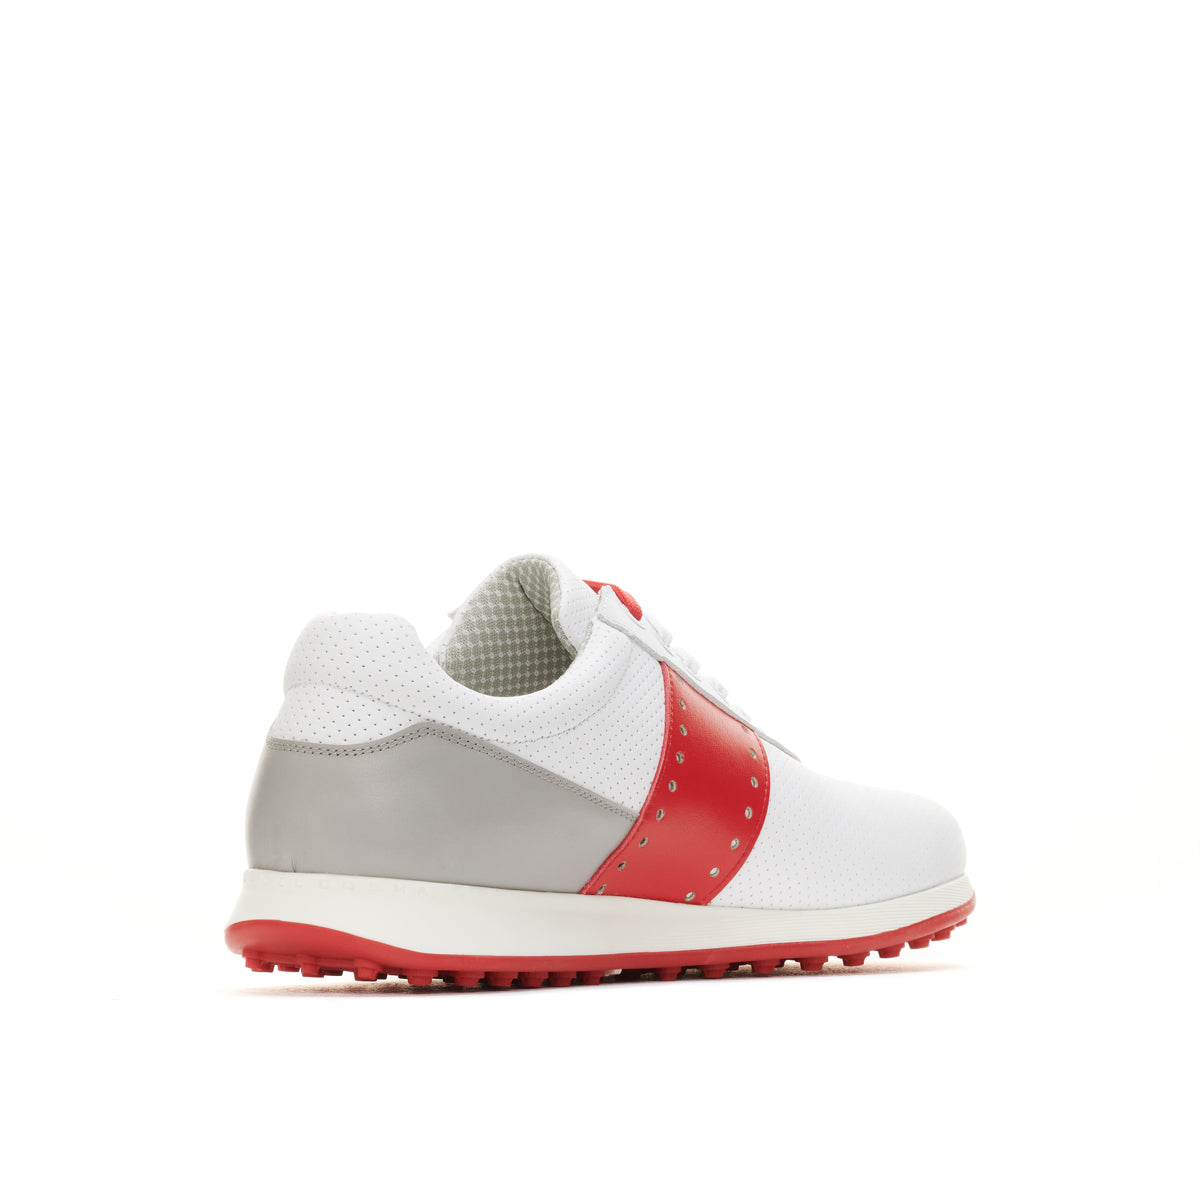 Belair White/Grey/Red Men's Golf Shoe